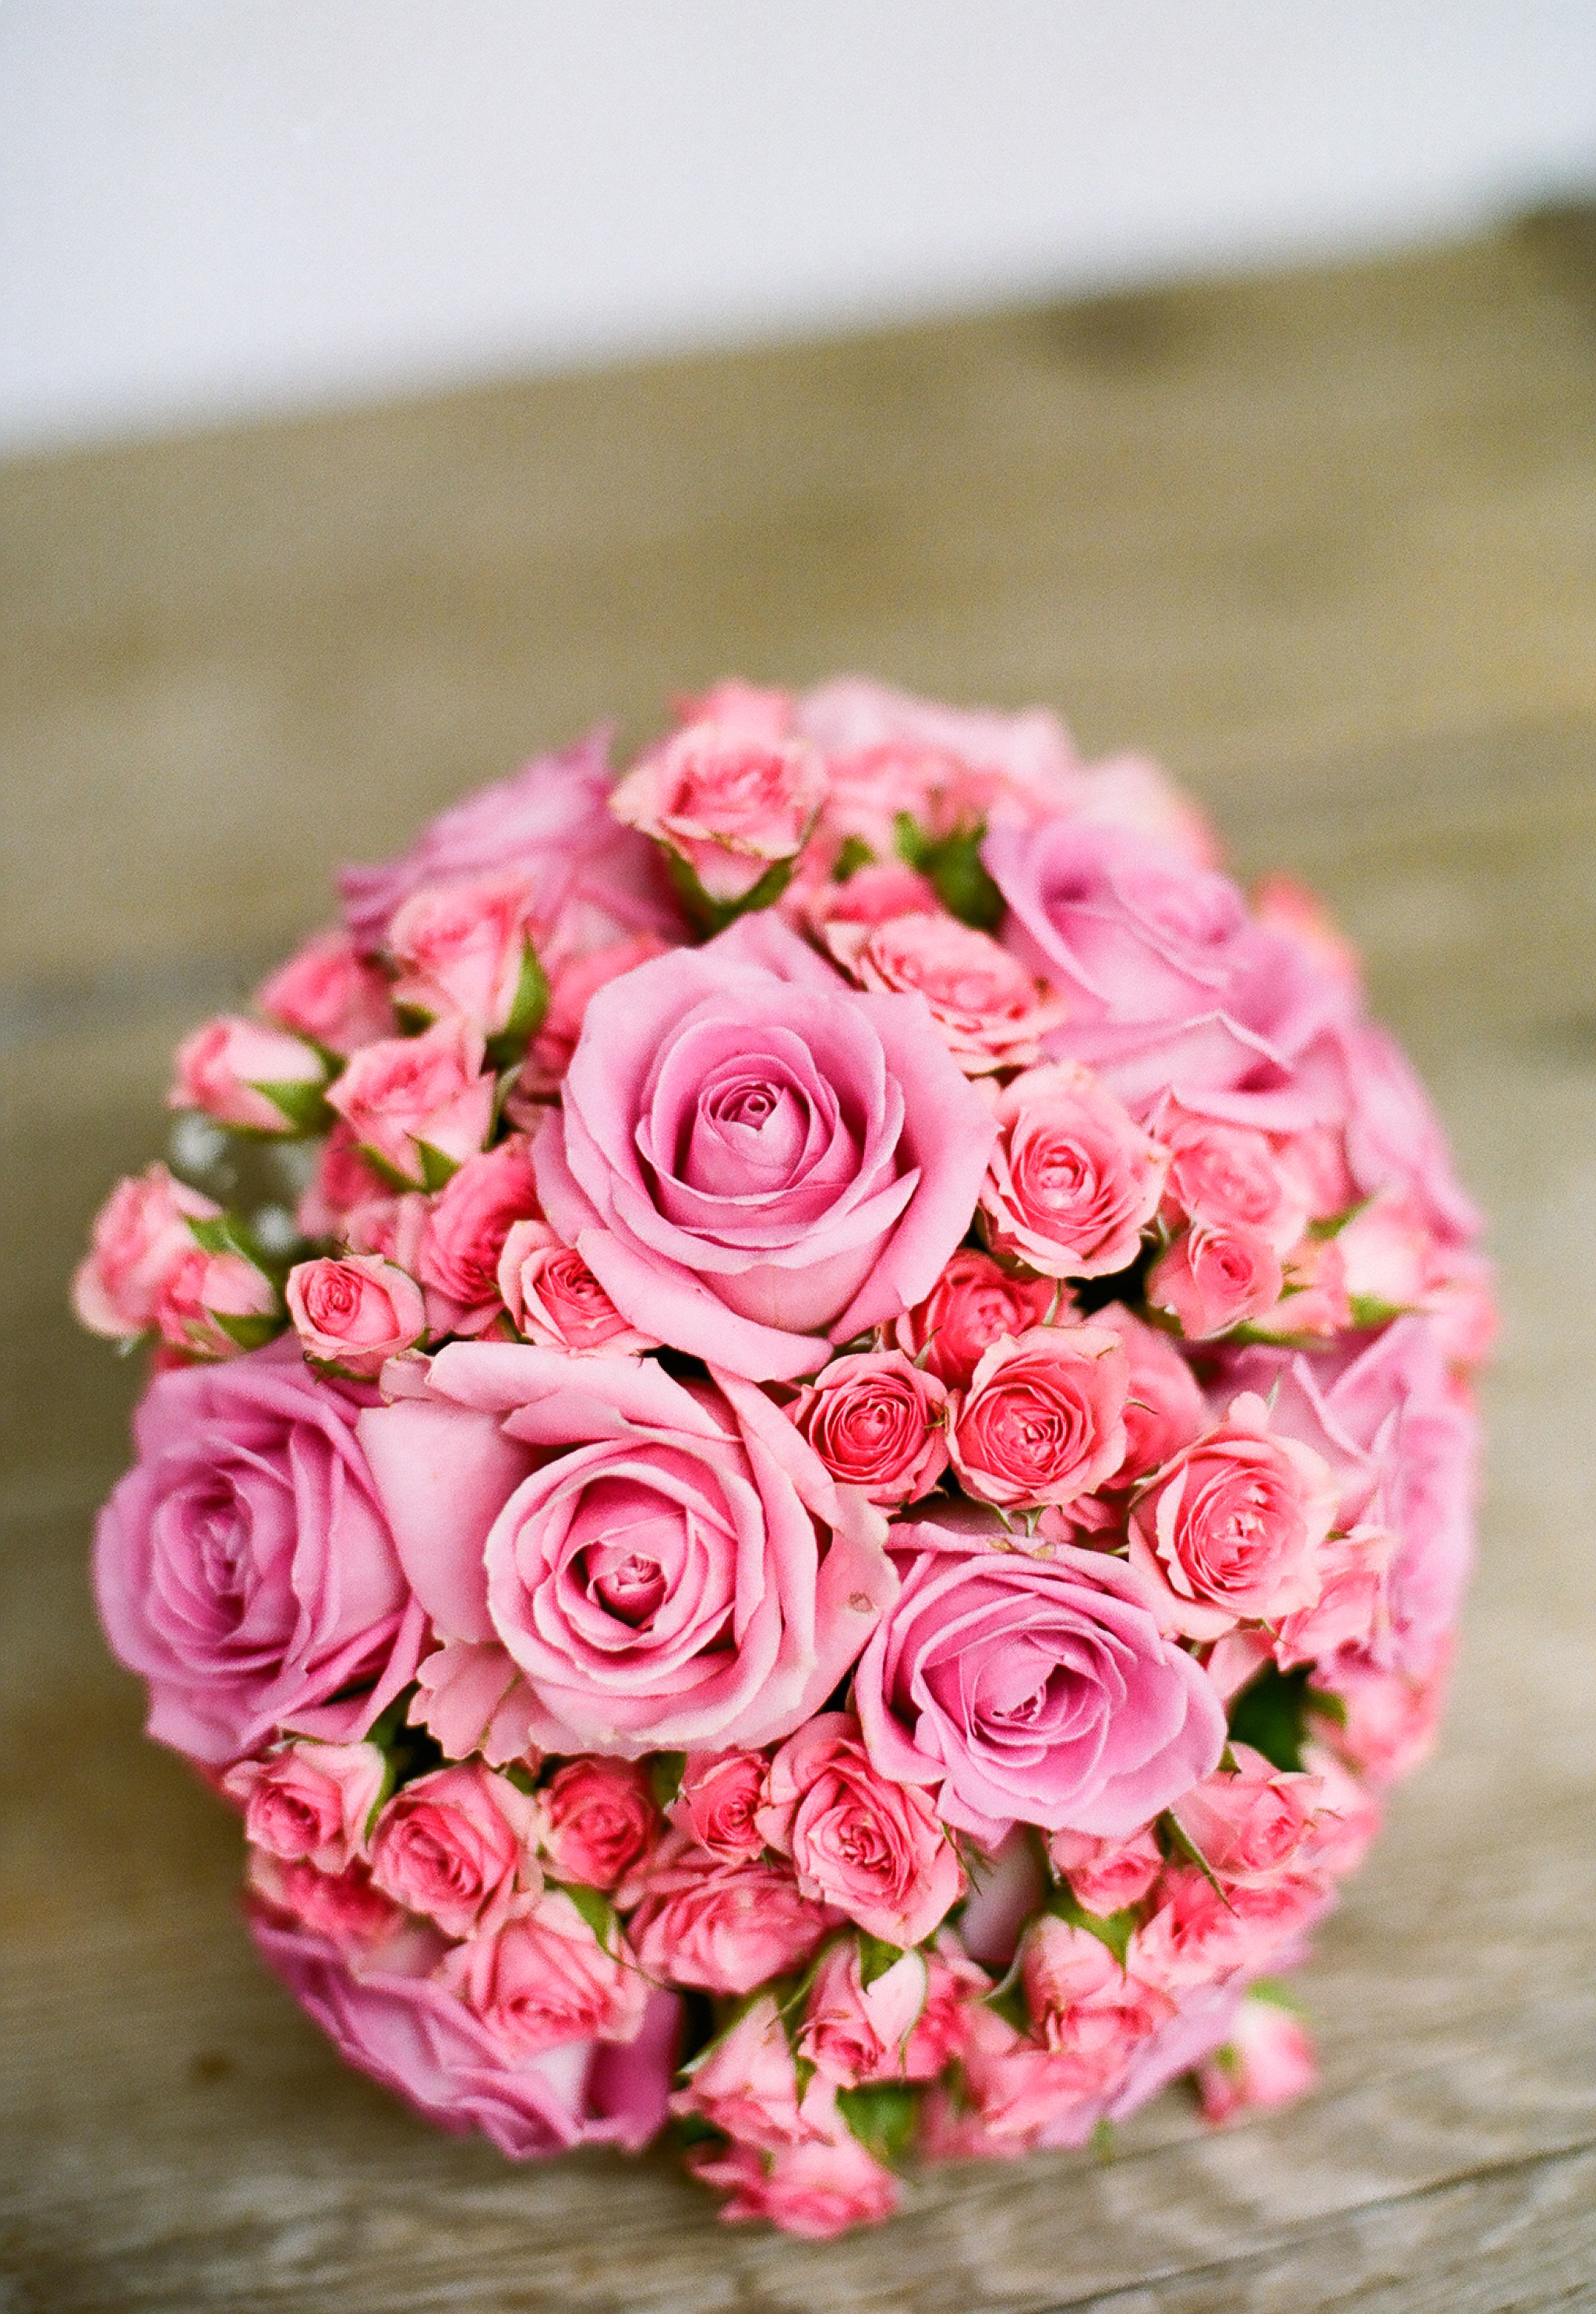 一束美丽的粉色玫瑰